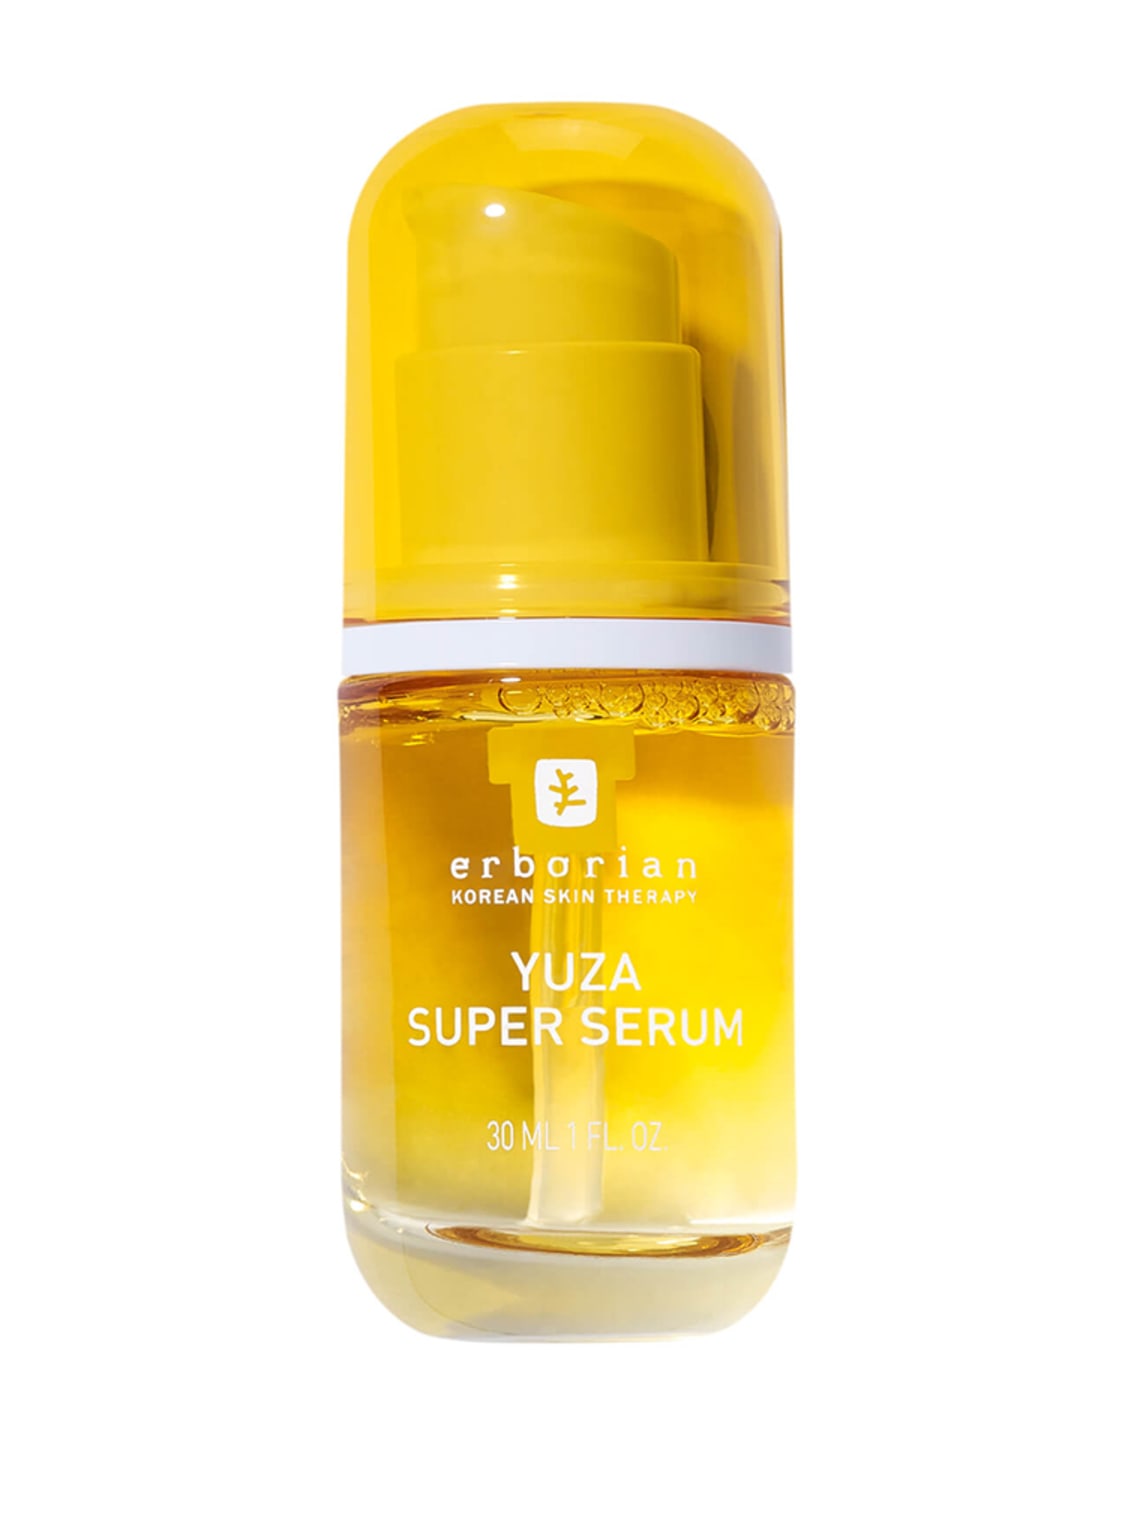 Image of Erborian Yuza Super Serum Serum 30 ml